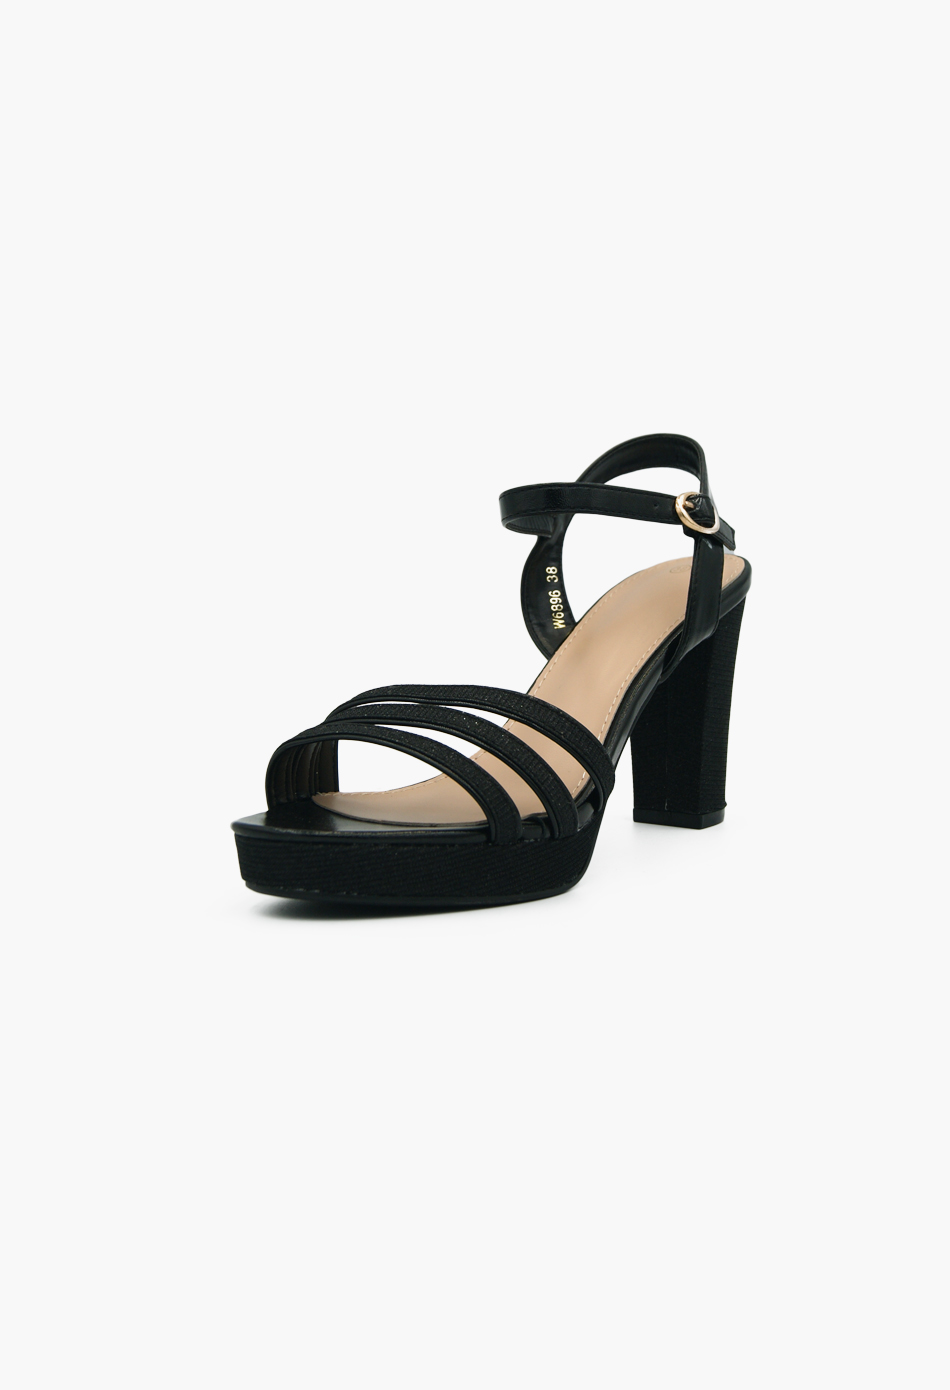 Γυναικεία Πέδιλα με Χοντρό Ψηλό Τακούνι με Υκλίτερ Μαύρο / W6896-black Ανοιχτά Παπούτσια joya.gr